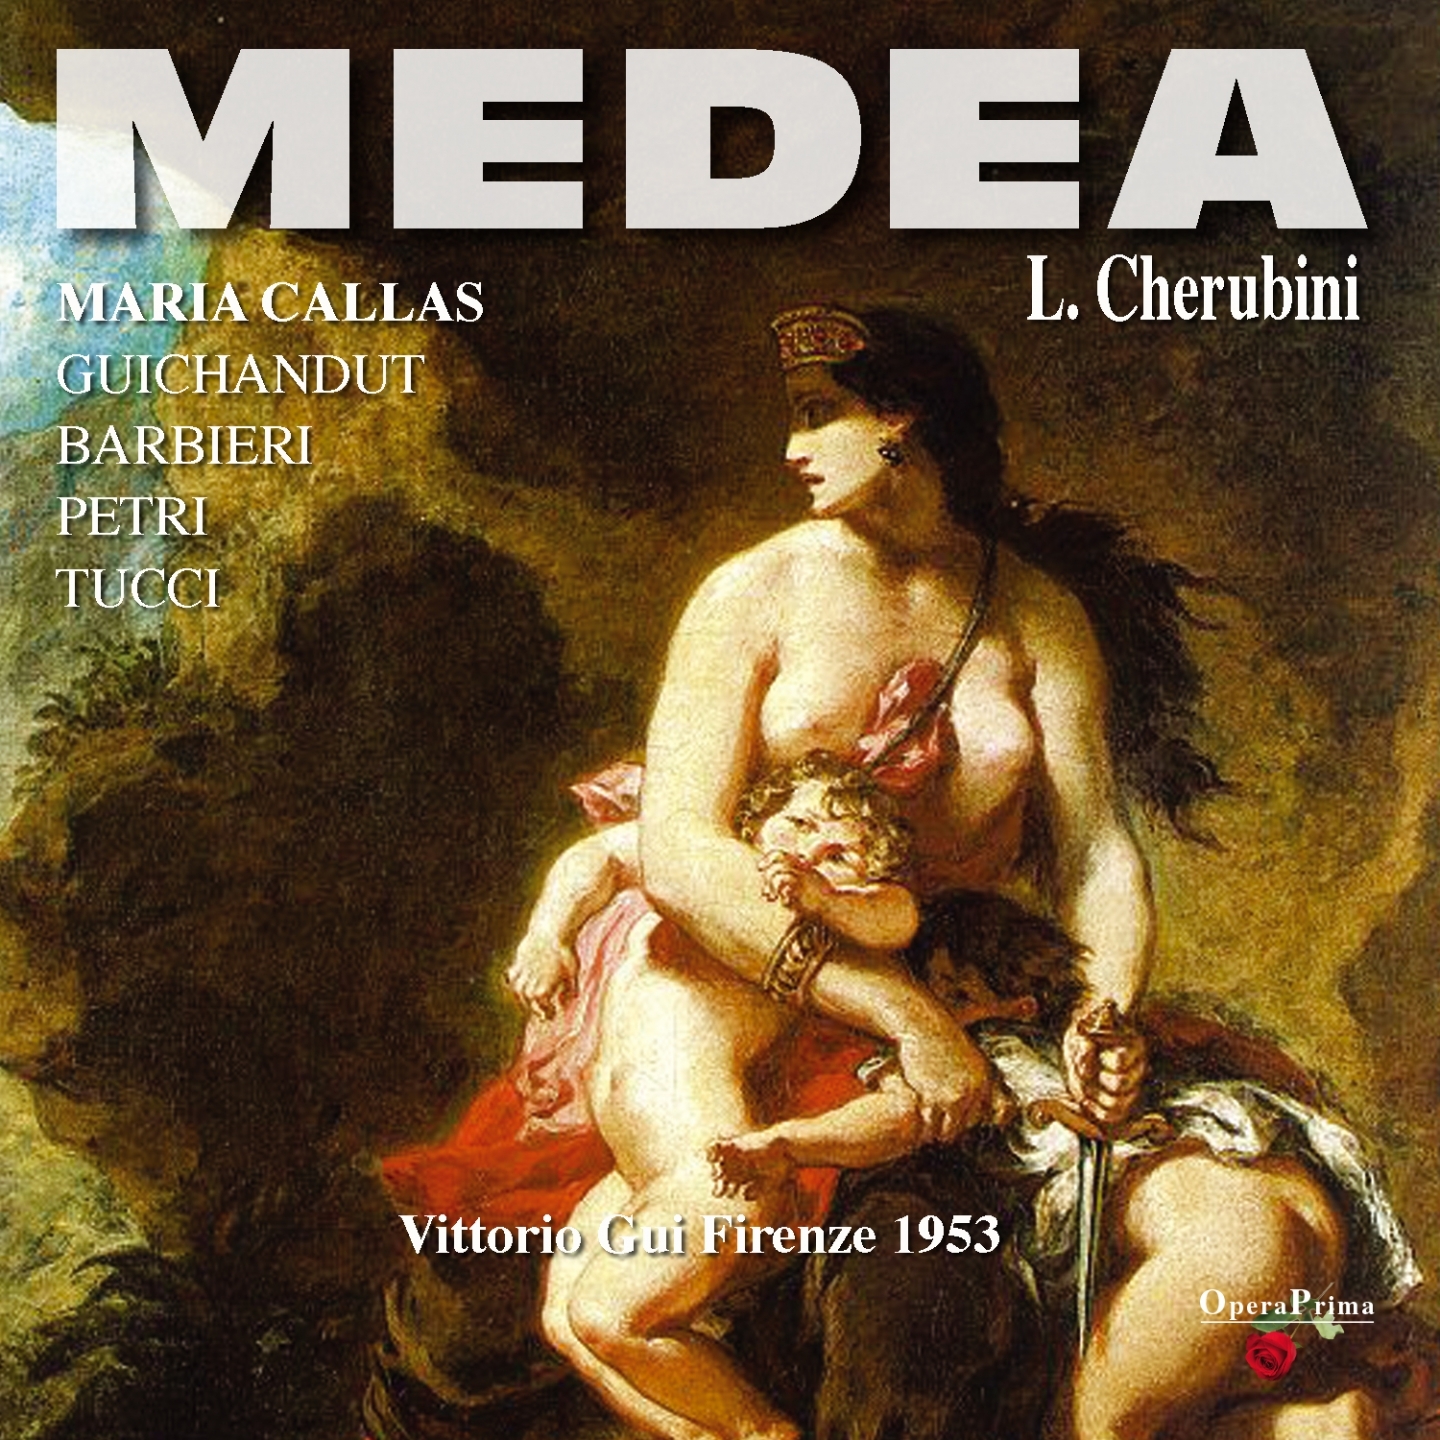 Medea : Act III - "D'amore il raggio"